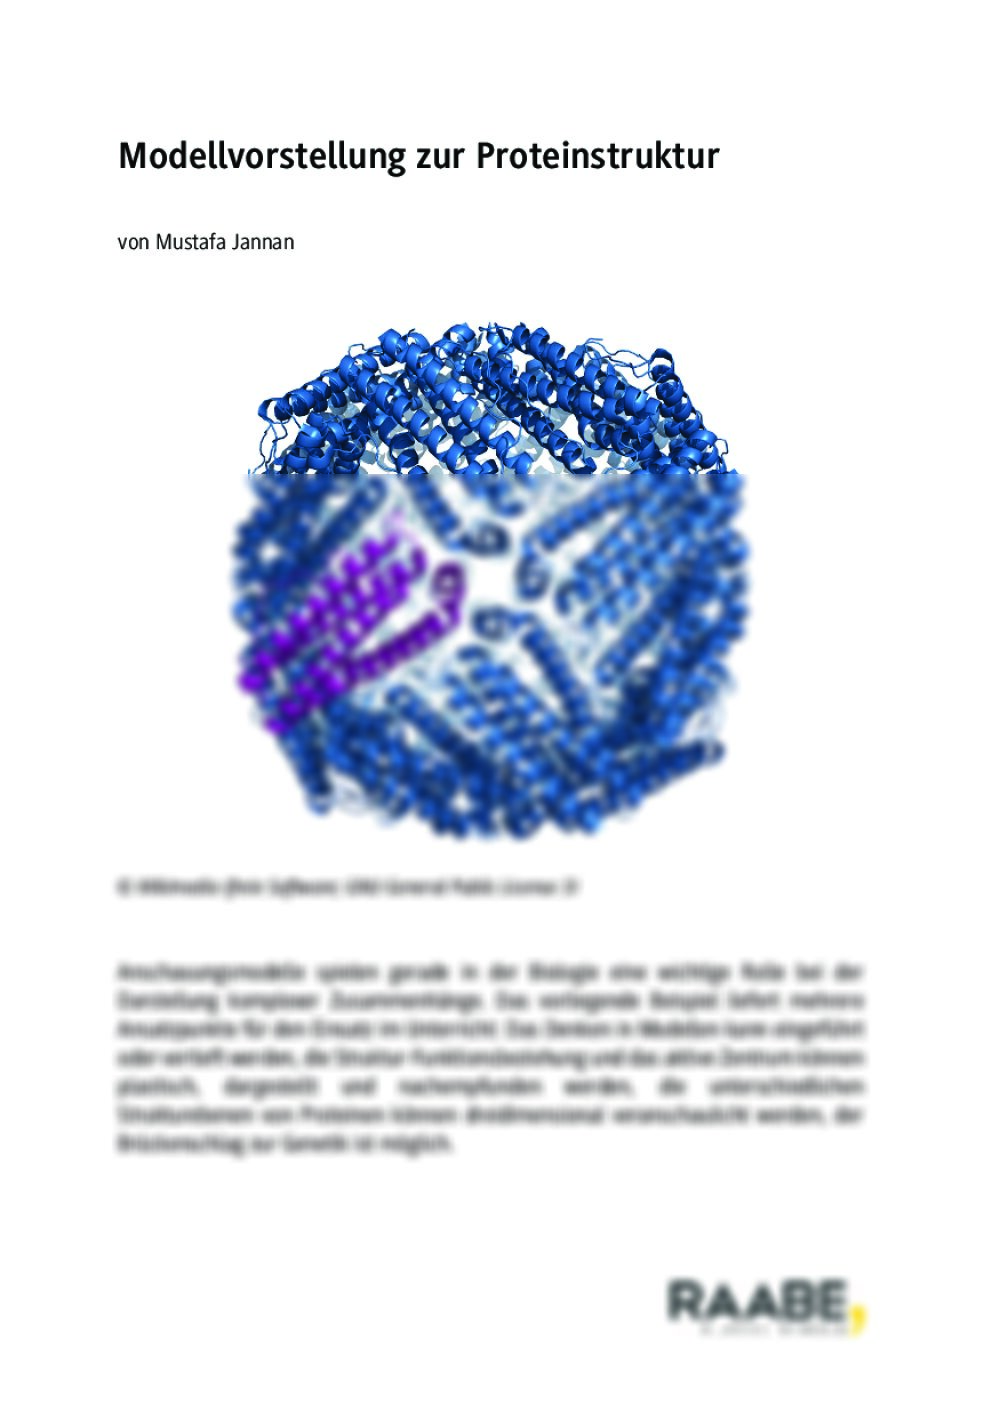 Modellvorstellung zur Proteinstruktur - Seite 1